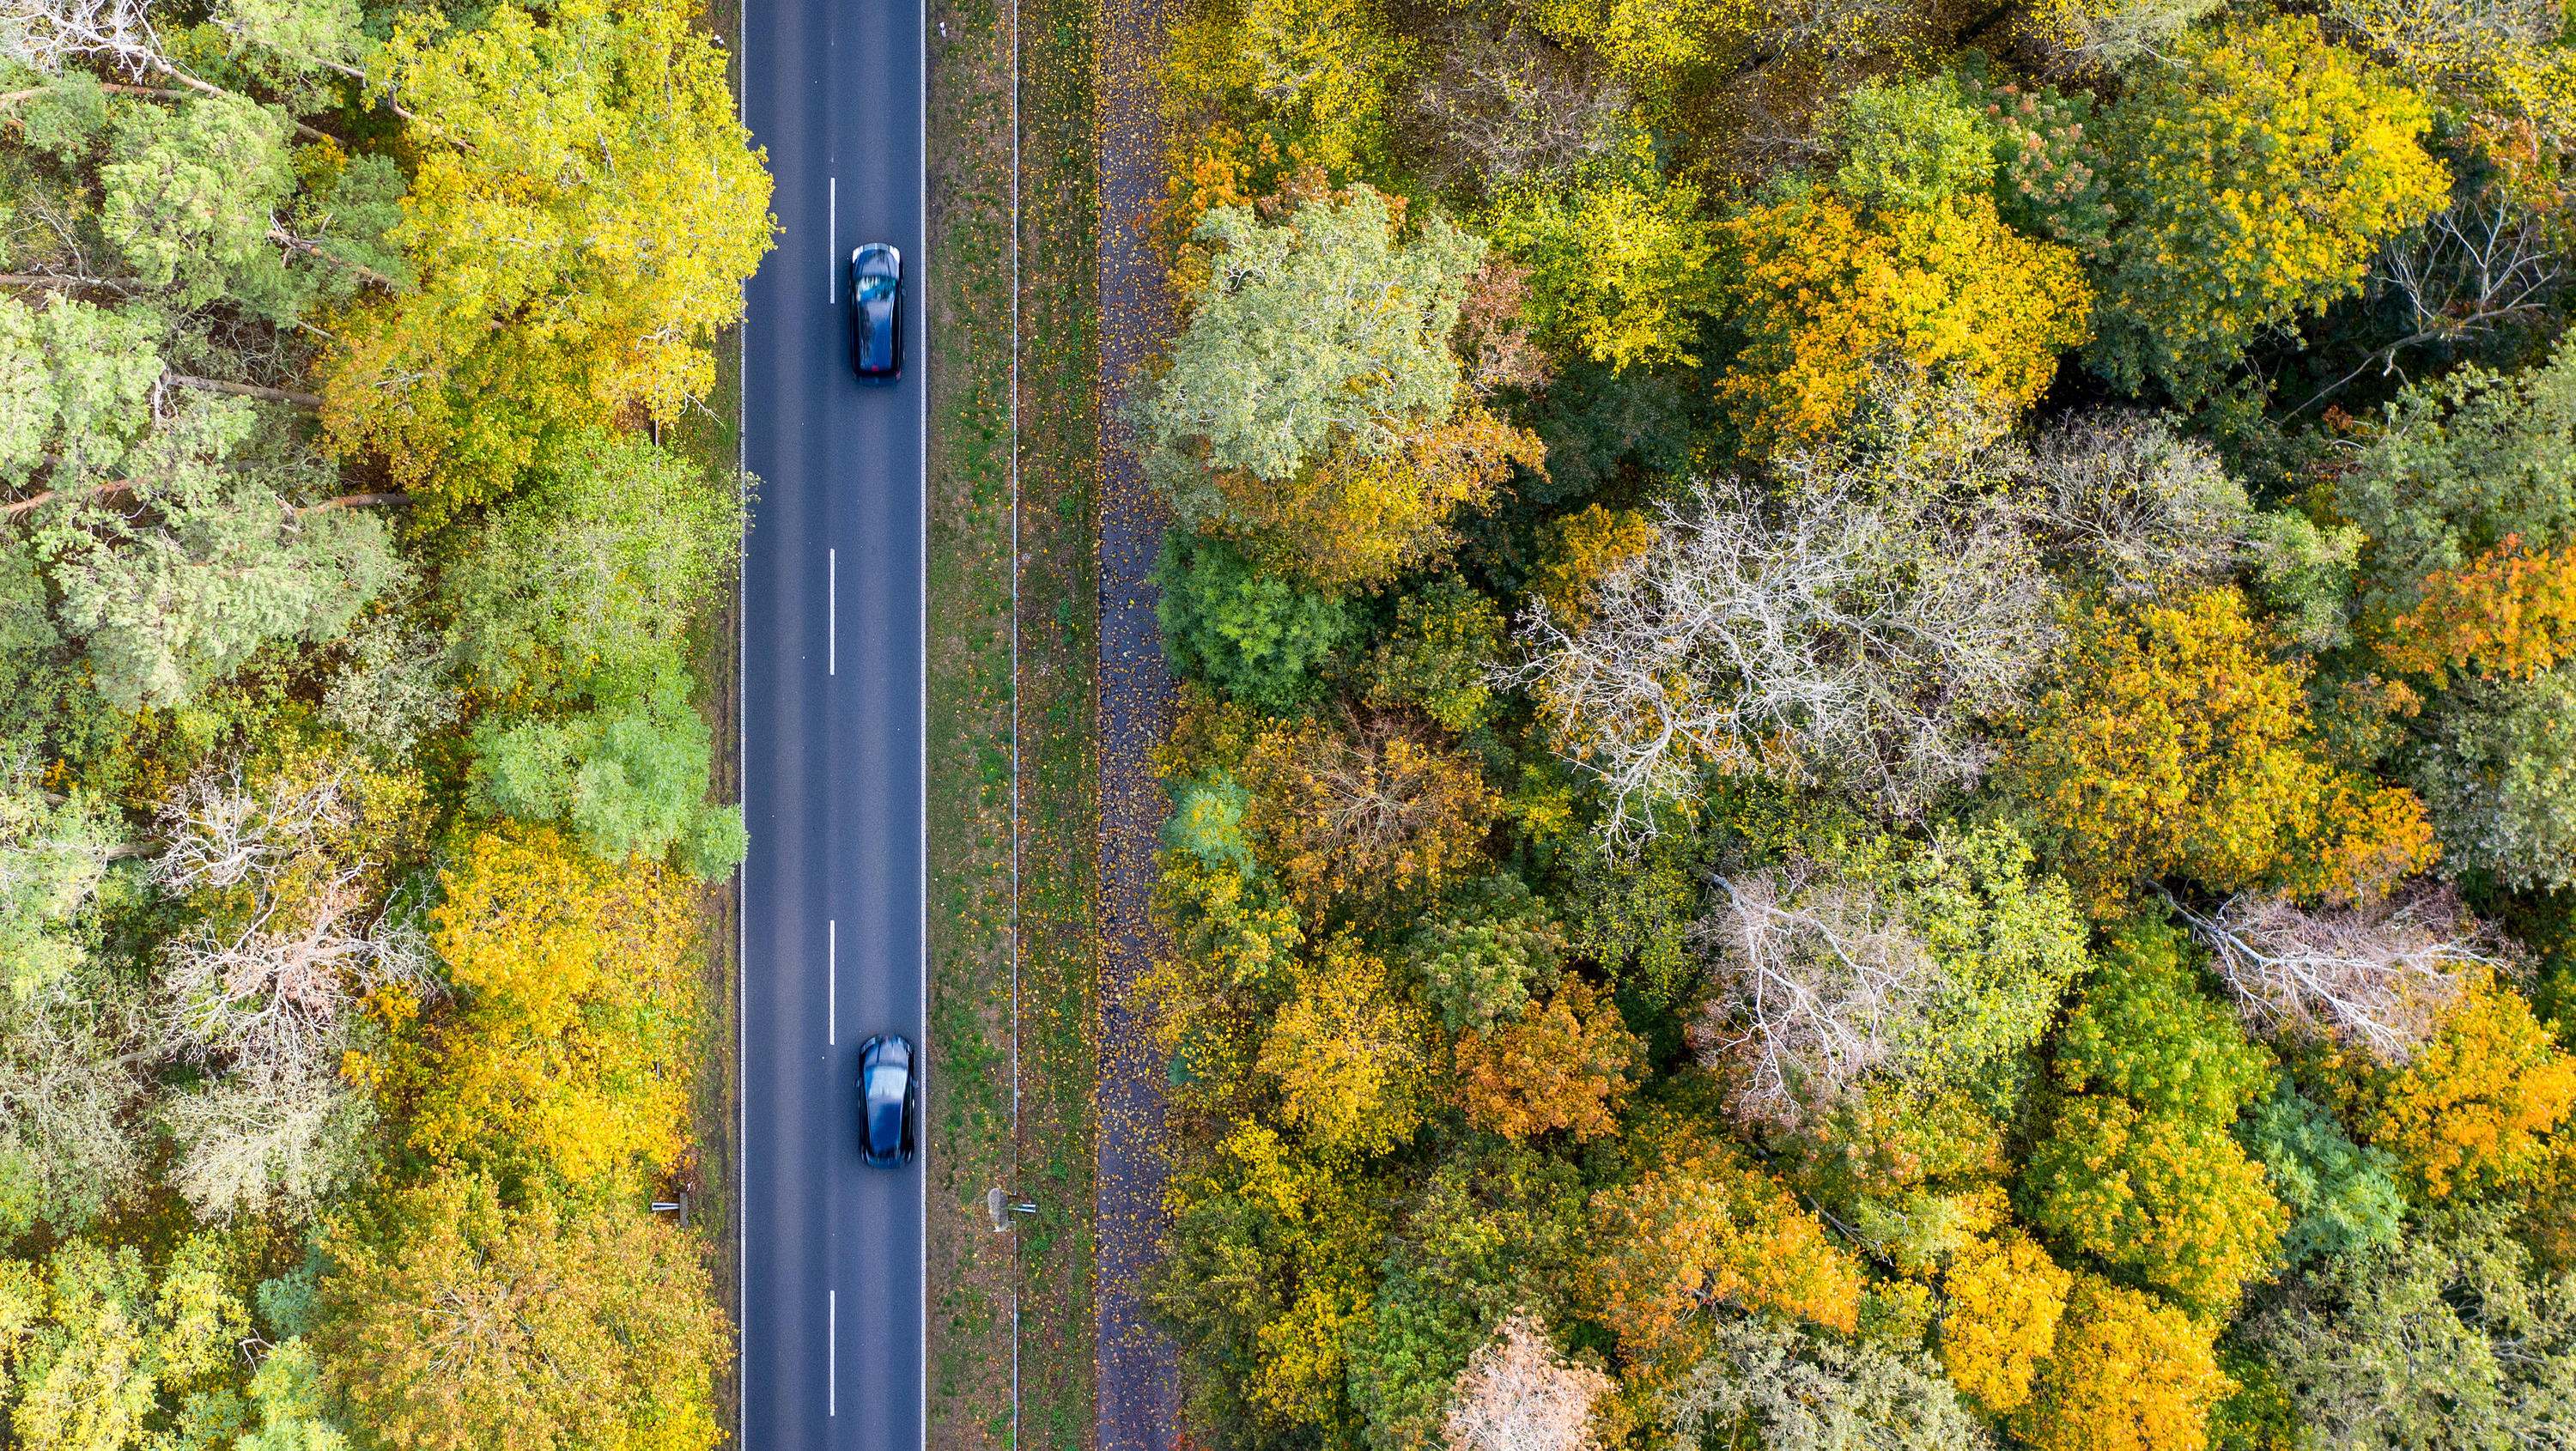 ARCHIV - 17.10.2019, Brandenburg, Nuthetal: Zwei Autos fahren über die Landstraße L79 zwischen herbstlich gefärbten Bäumen (Luftaufnahme mit einer Drohne). (Zu dpa «CO2-Schlucker: Sind Bäume Klima-Retter?») Foto: Monika Skolimowska/dpa-Zentralbild/dpa +++ dpa-Bildfunk +++